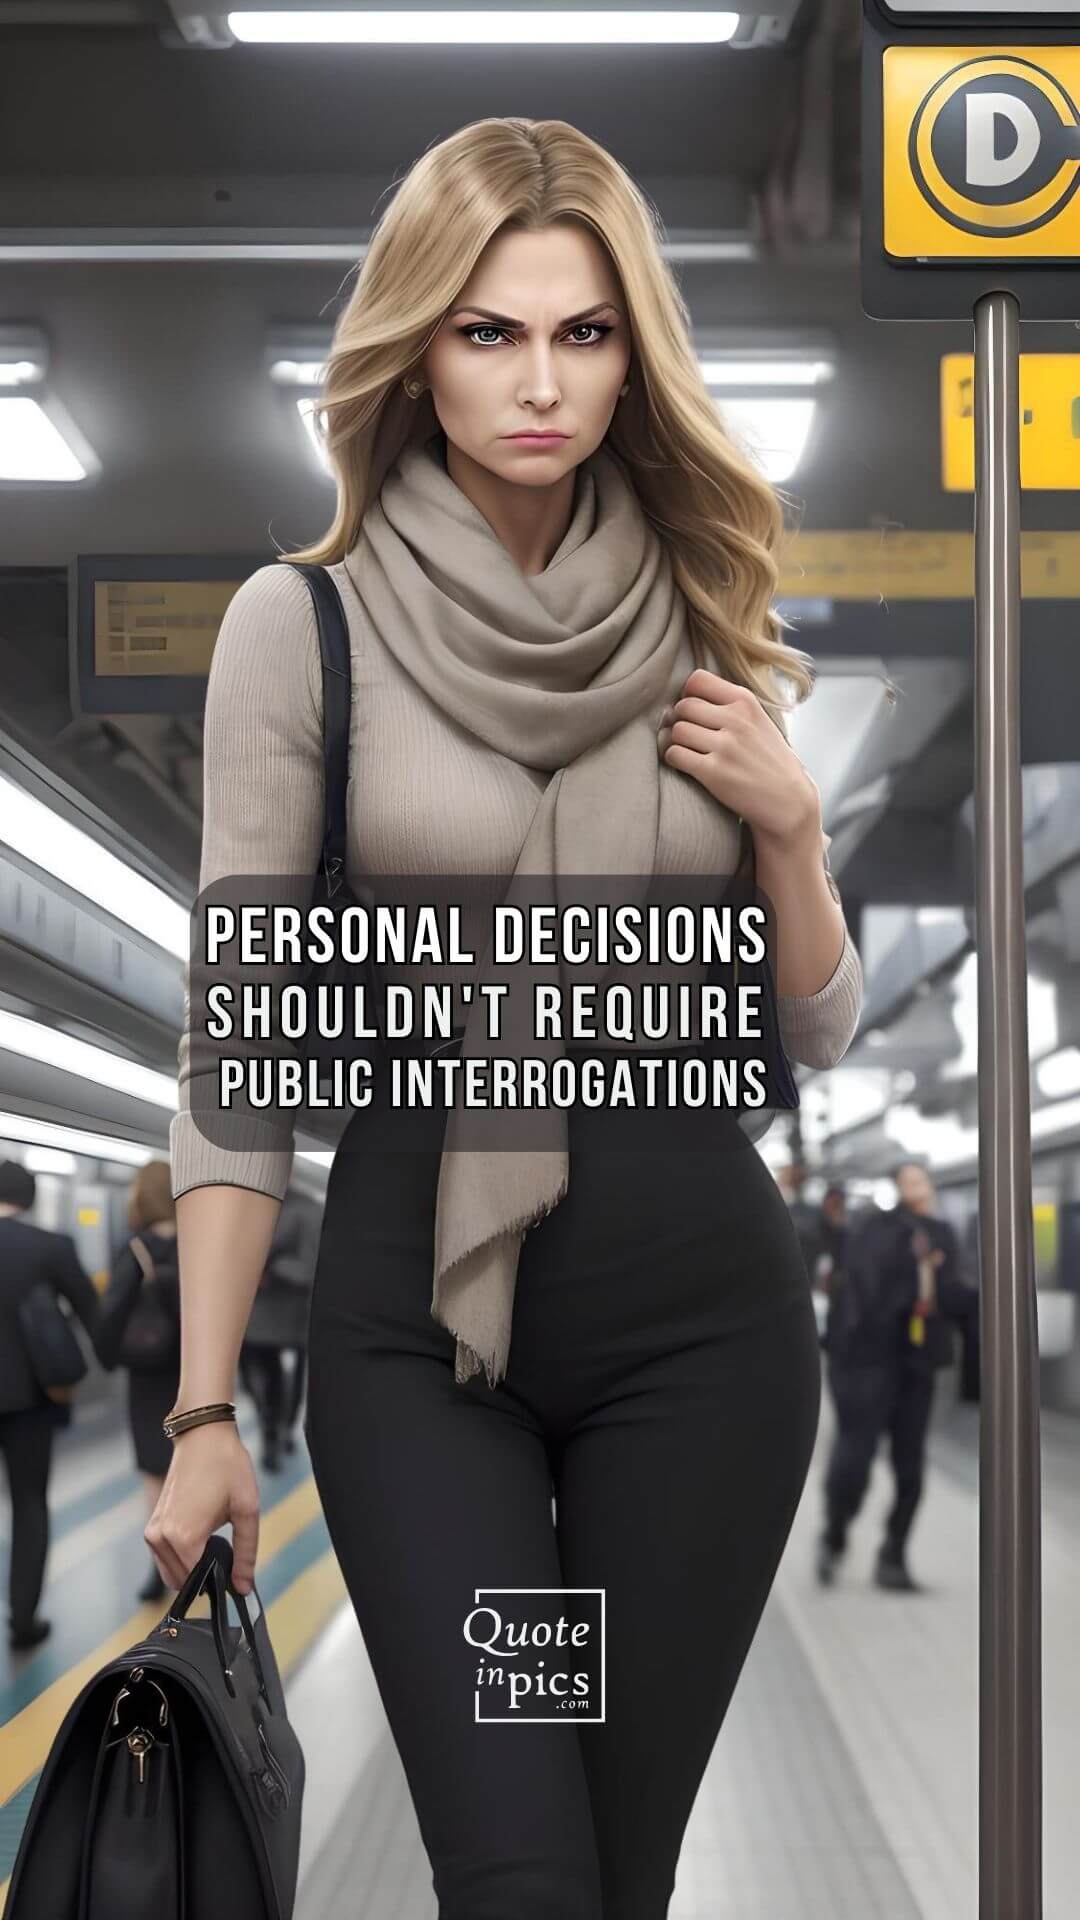 Personal decisions shouldn't require public interrogations